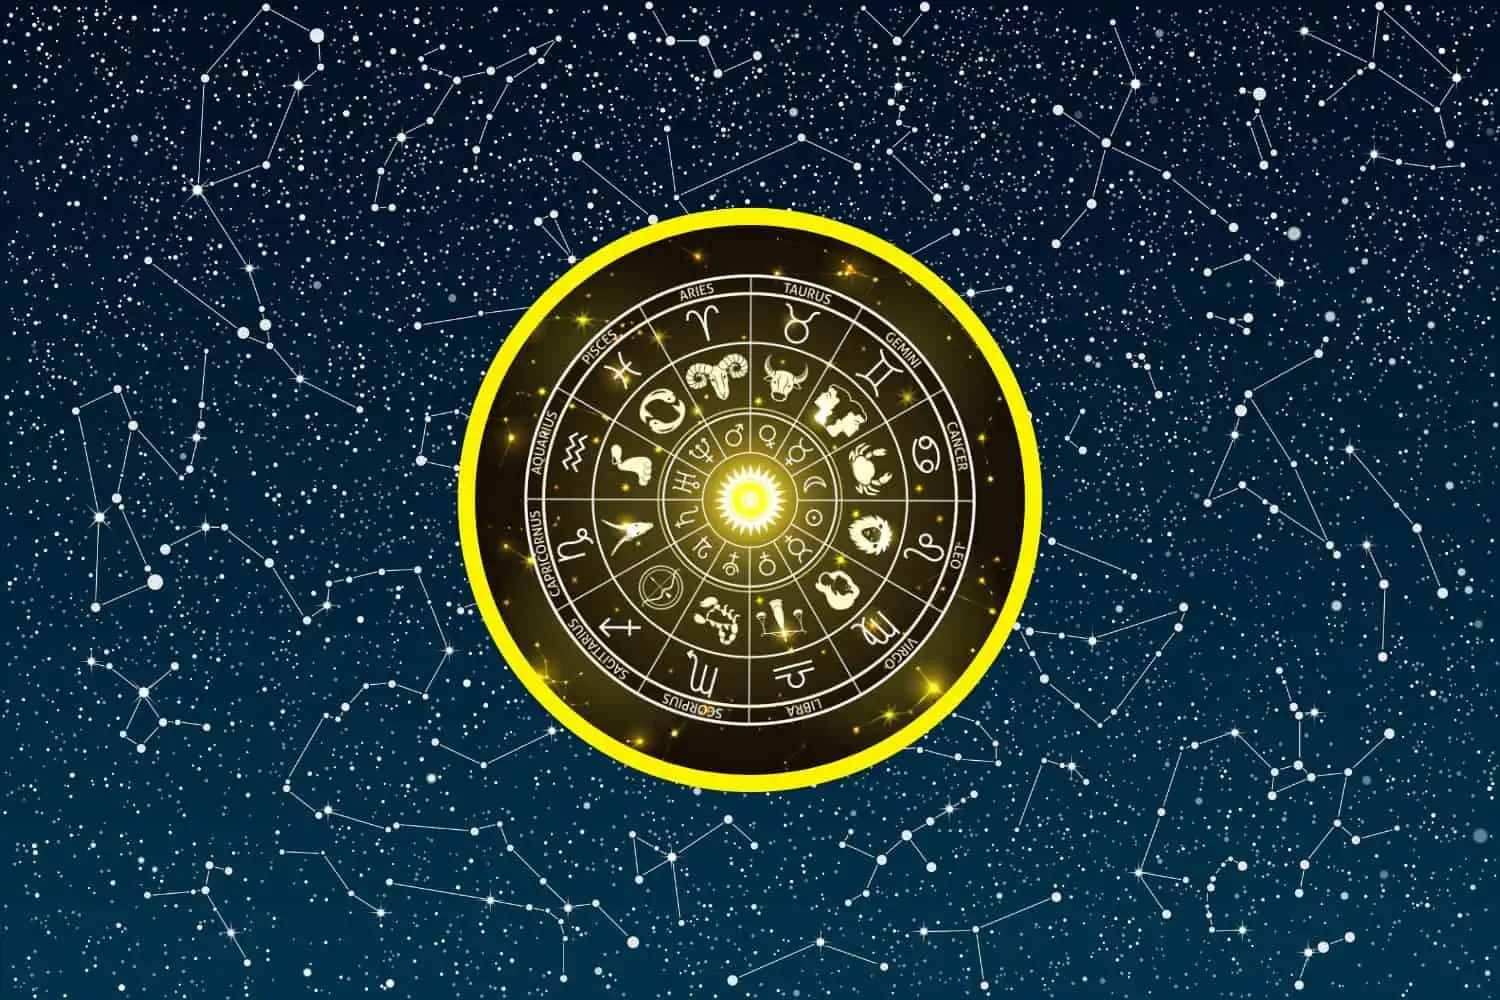 Today’s Free Horoscopes Tuesday 6 December 2022